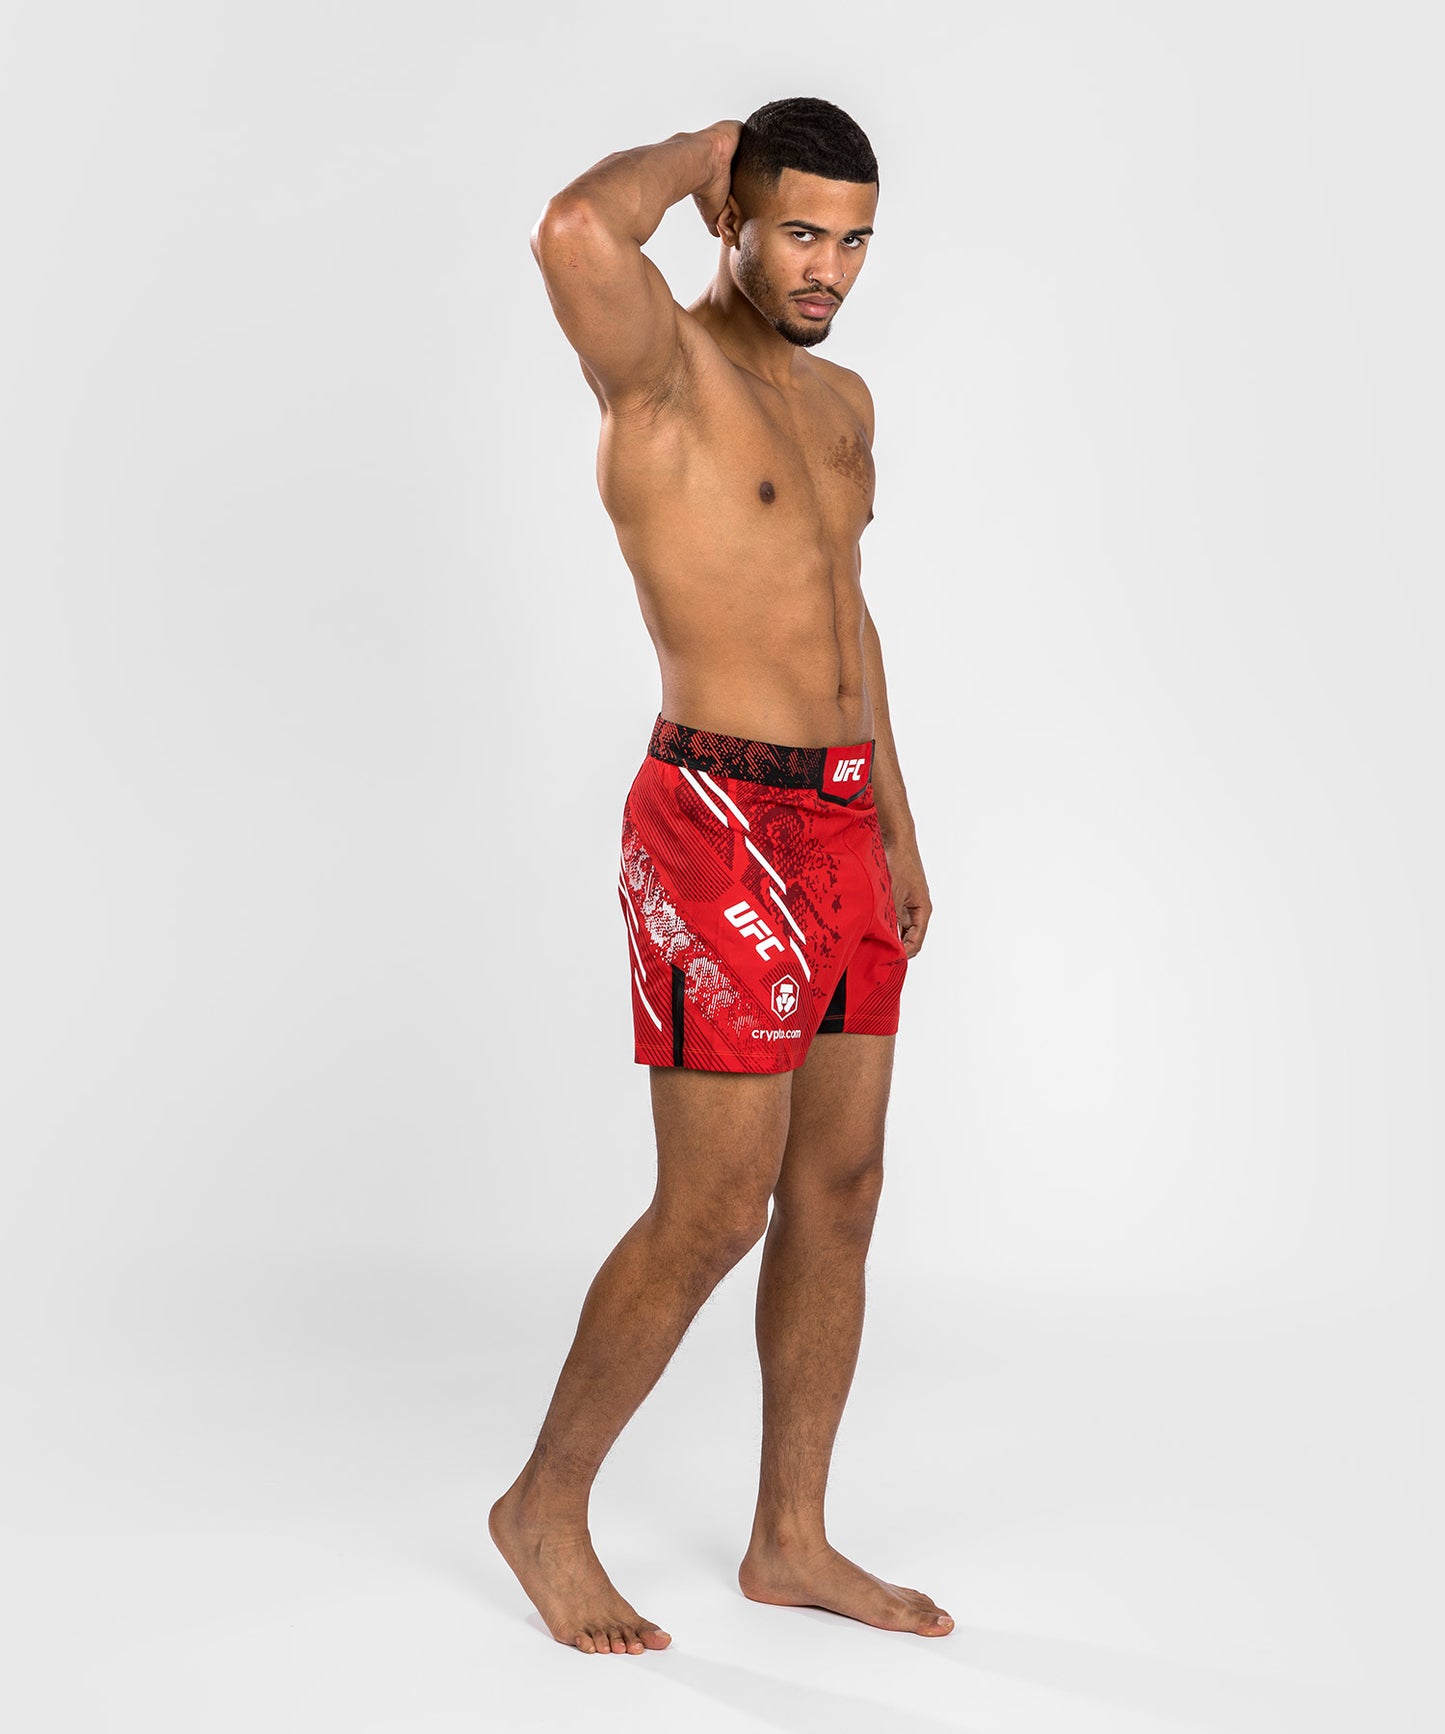 Pantaloncini da combattimento UFC Adrenaline by Venum personalizzati Authentic Fight Night Uomo - Short Fit – Rosso